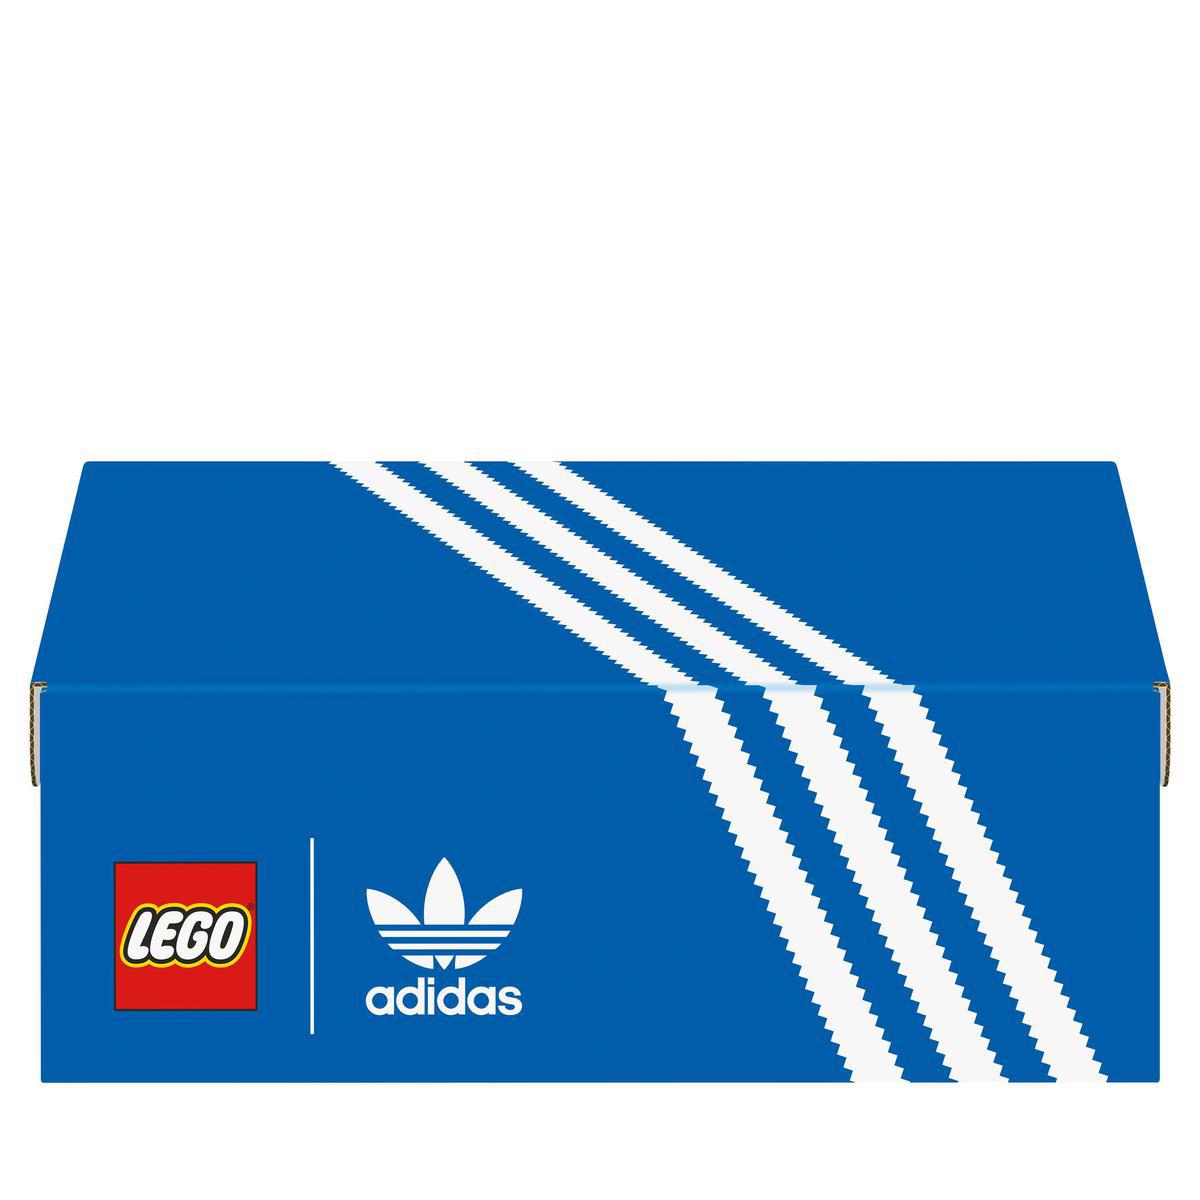 Köp LEGO Icons 10282, adidas Originals Superstar på lekia.se